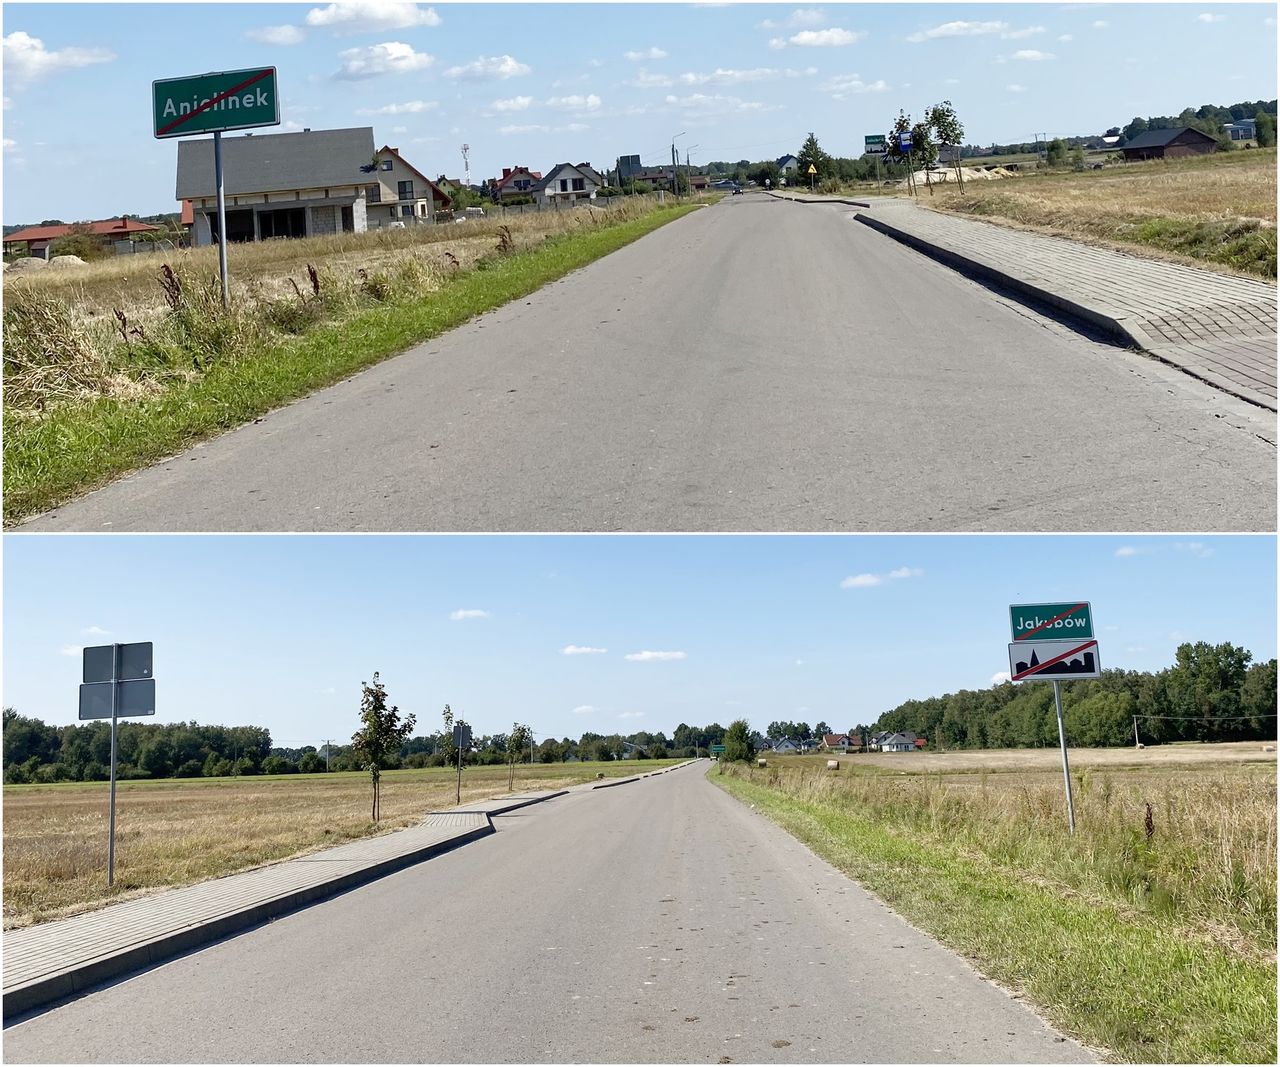 Ta sama droga widziana z dwóch kierunków. Kierowca wyjeżdżający z miejscowości Anielinek  w kierunku miejscowości Jakubów musi jechać z prędkością 50 km/h, ponieważ w tym kierunku nie umieszczono znaku D-43. Jadąc w przeciwnym kierunku, wyjazd z Jakubowa jest oznaczony znakiem D-43, więc może przyspieszyć do 90 km/h, ale tylko do znaku D-42 umieszczonego za znakiem oznaczającym początek miejscowości Anielinek.